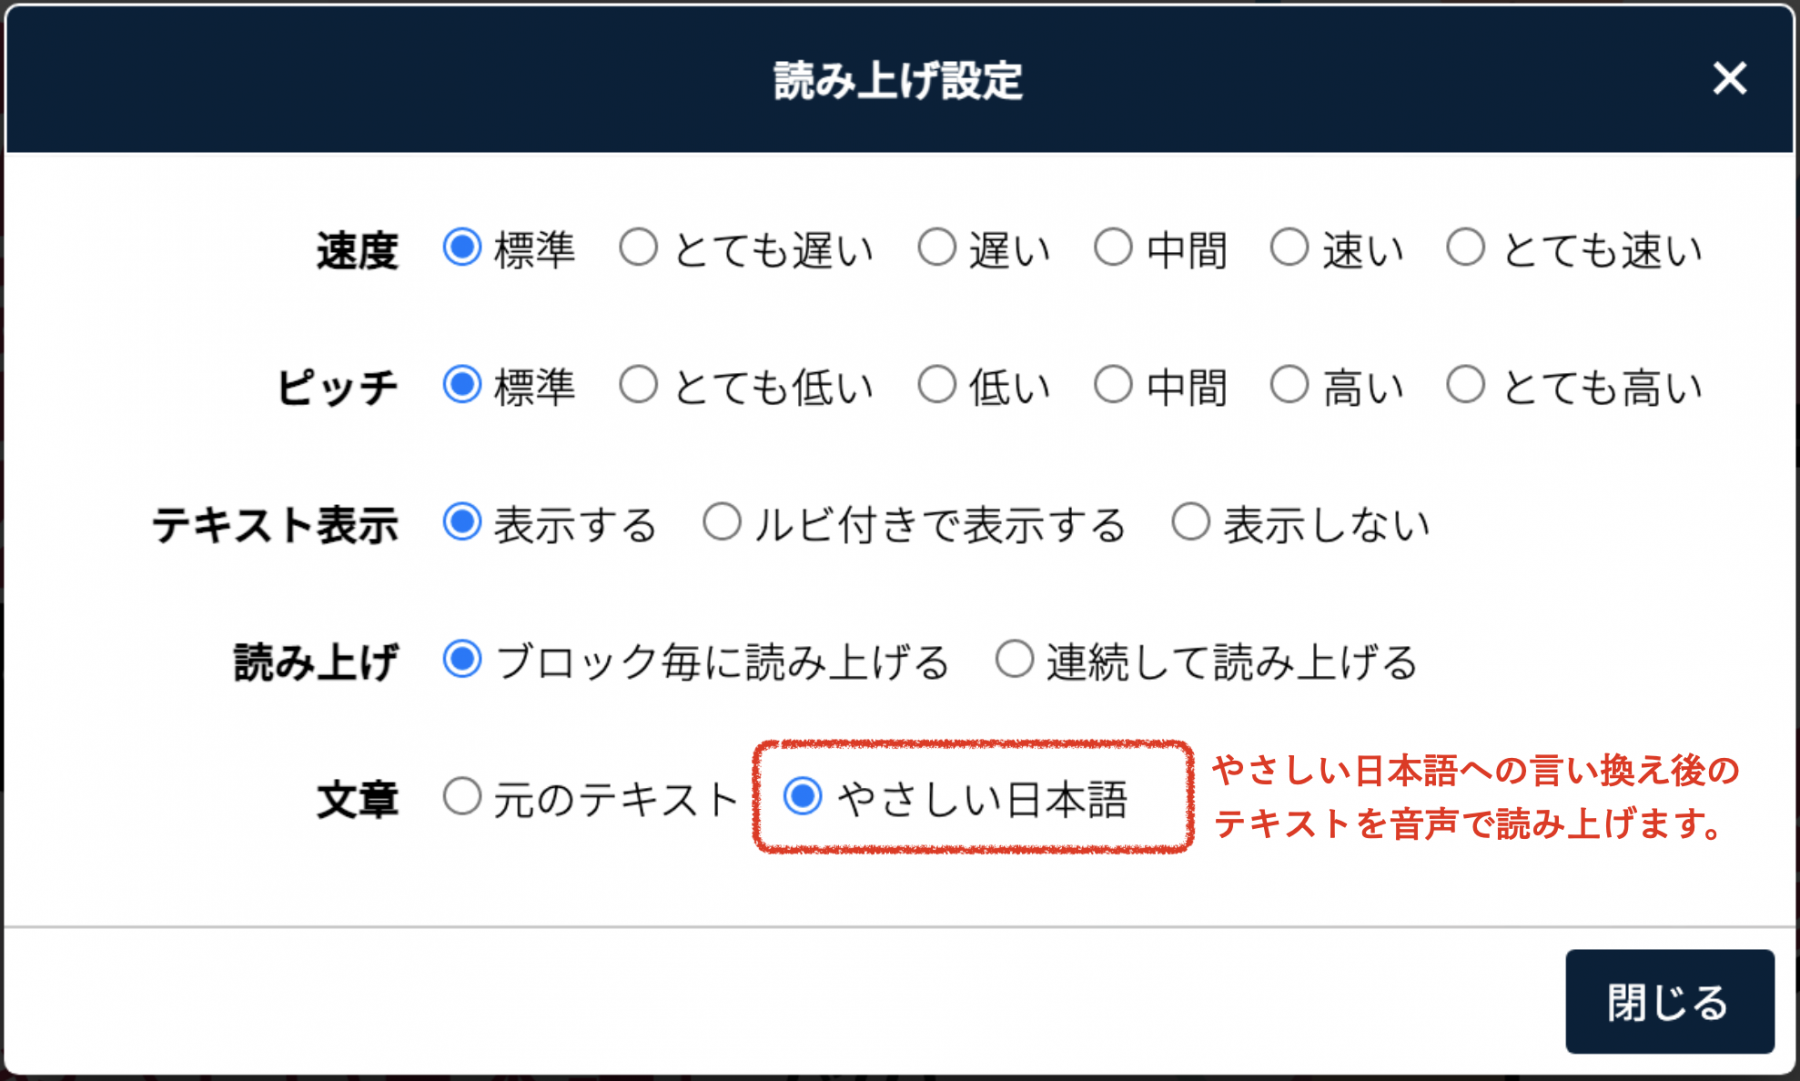 読み上げ設定で「やさしい日本語」を選択可能に